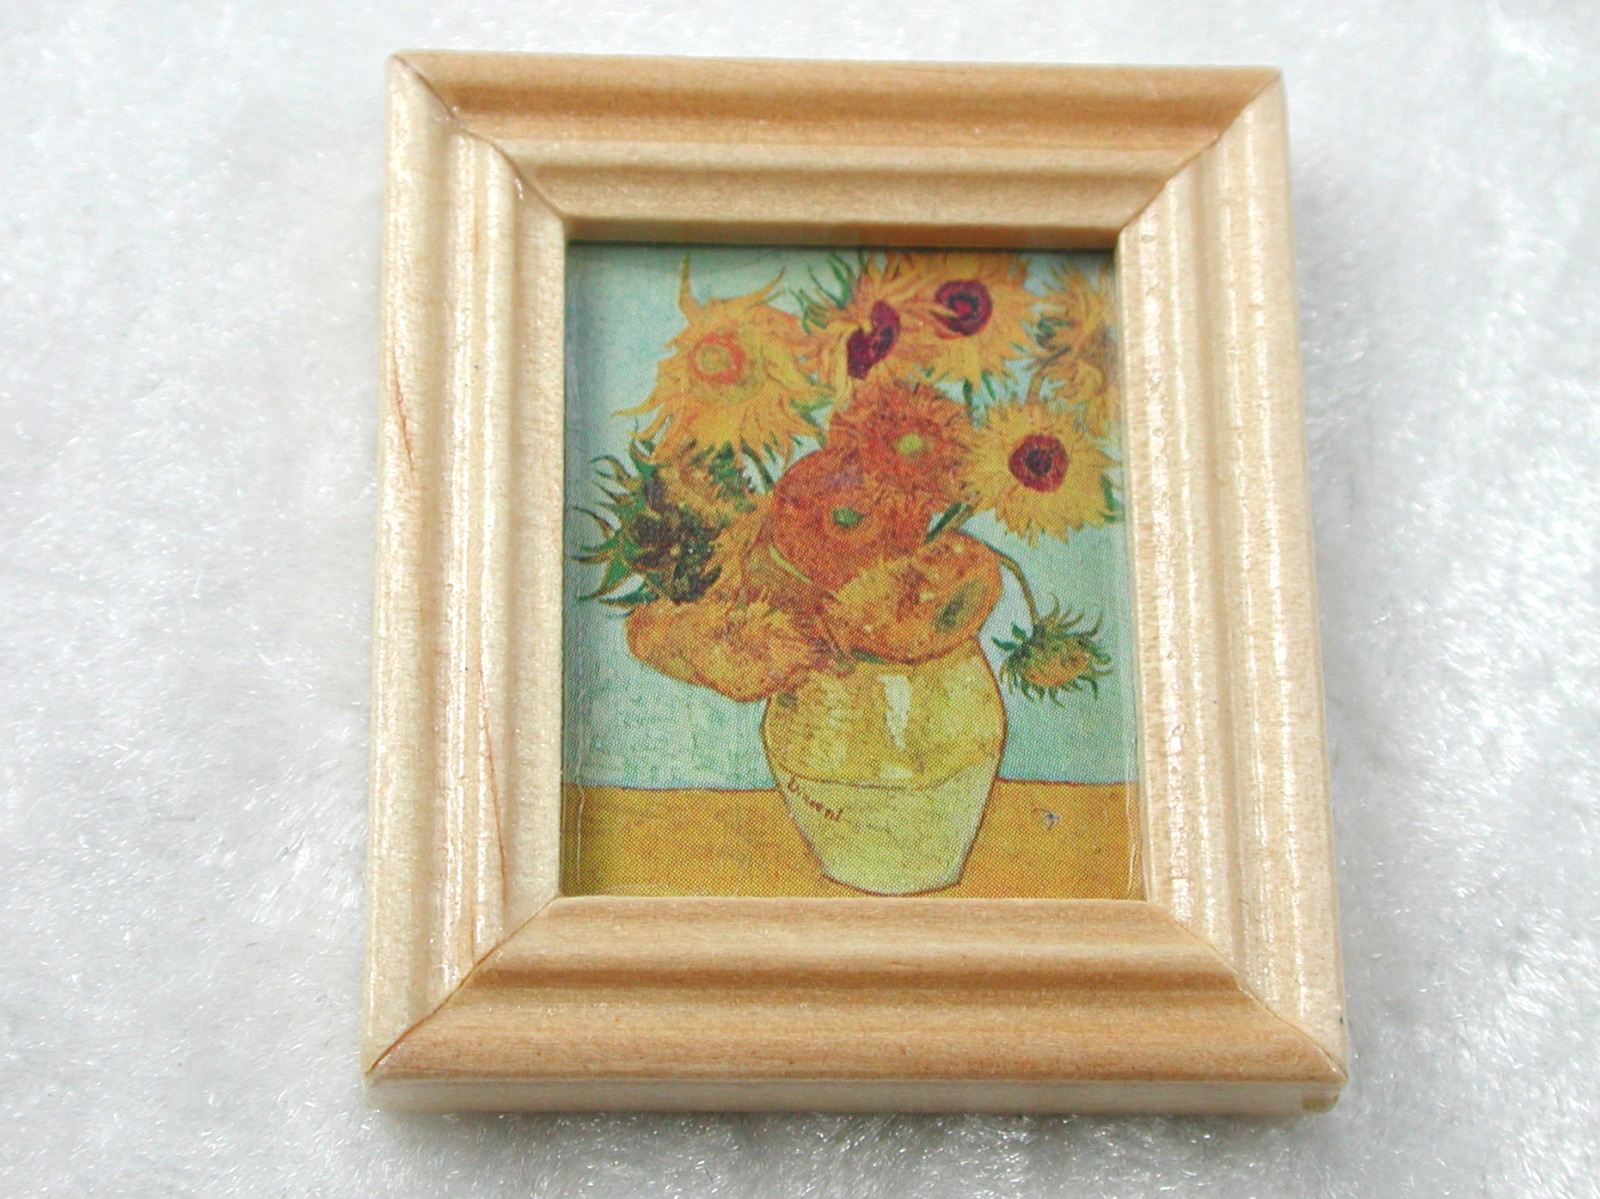 Gemäldekopie Sonnenblumen im Holzrahmen 3x 4x 0,5 cm